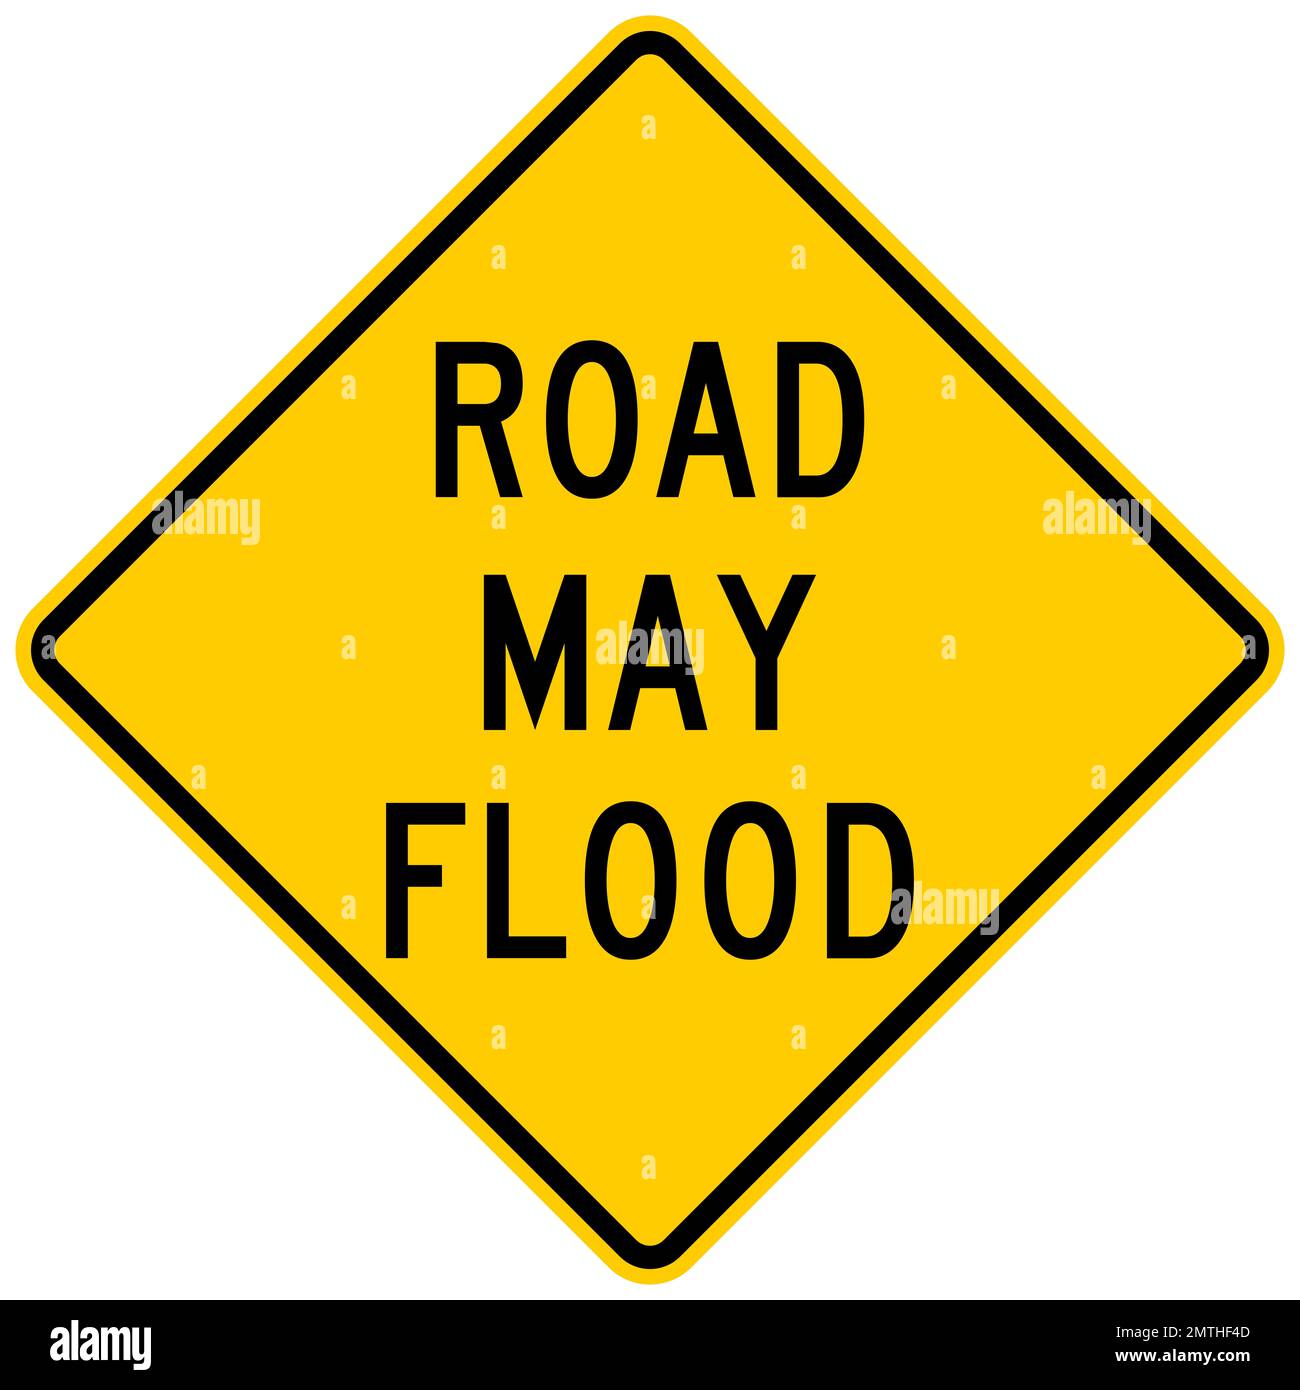 Road may flood warning sign Stock Photo